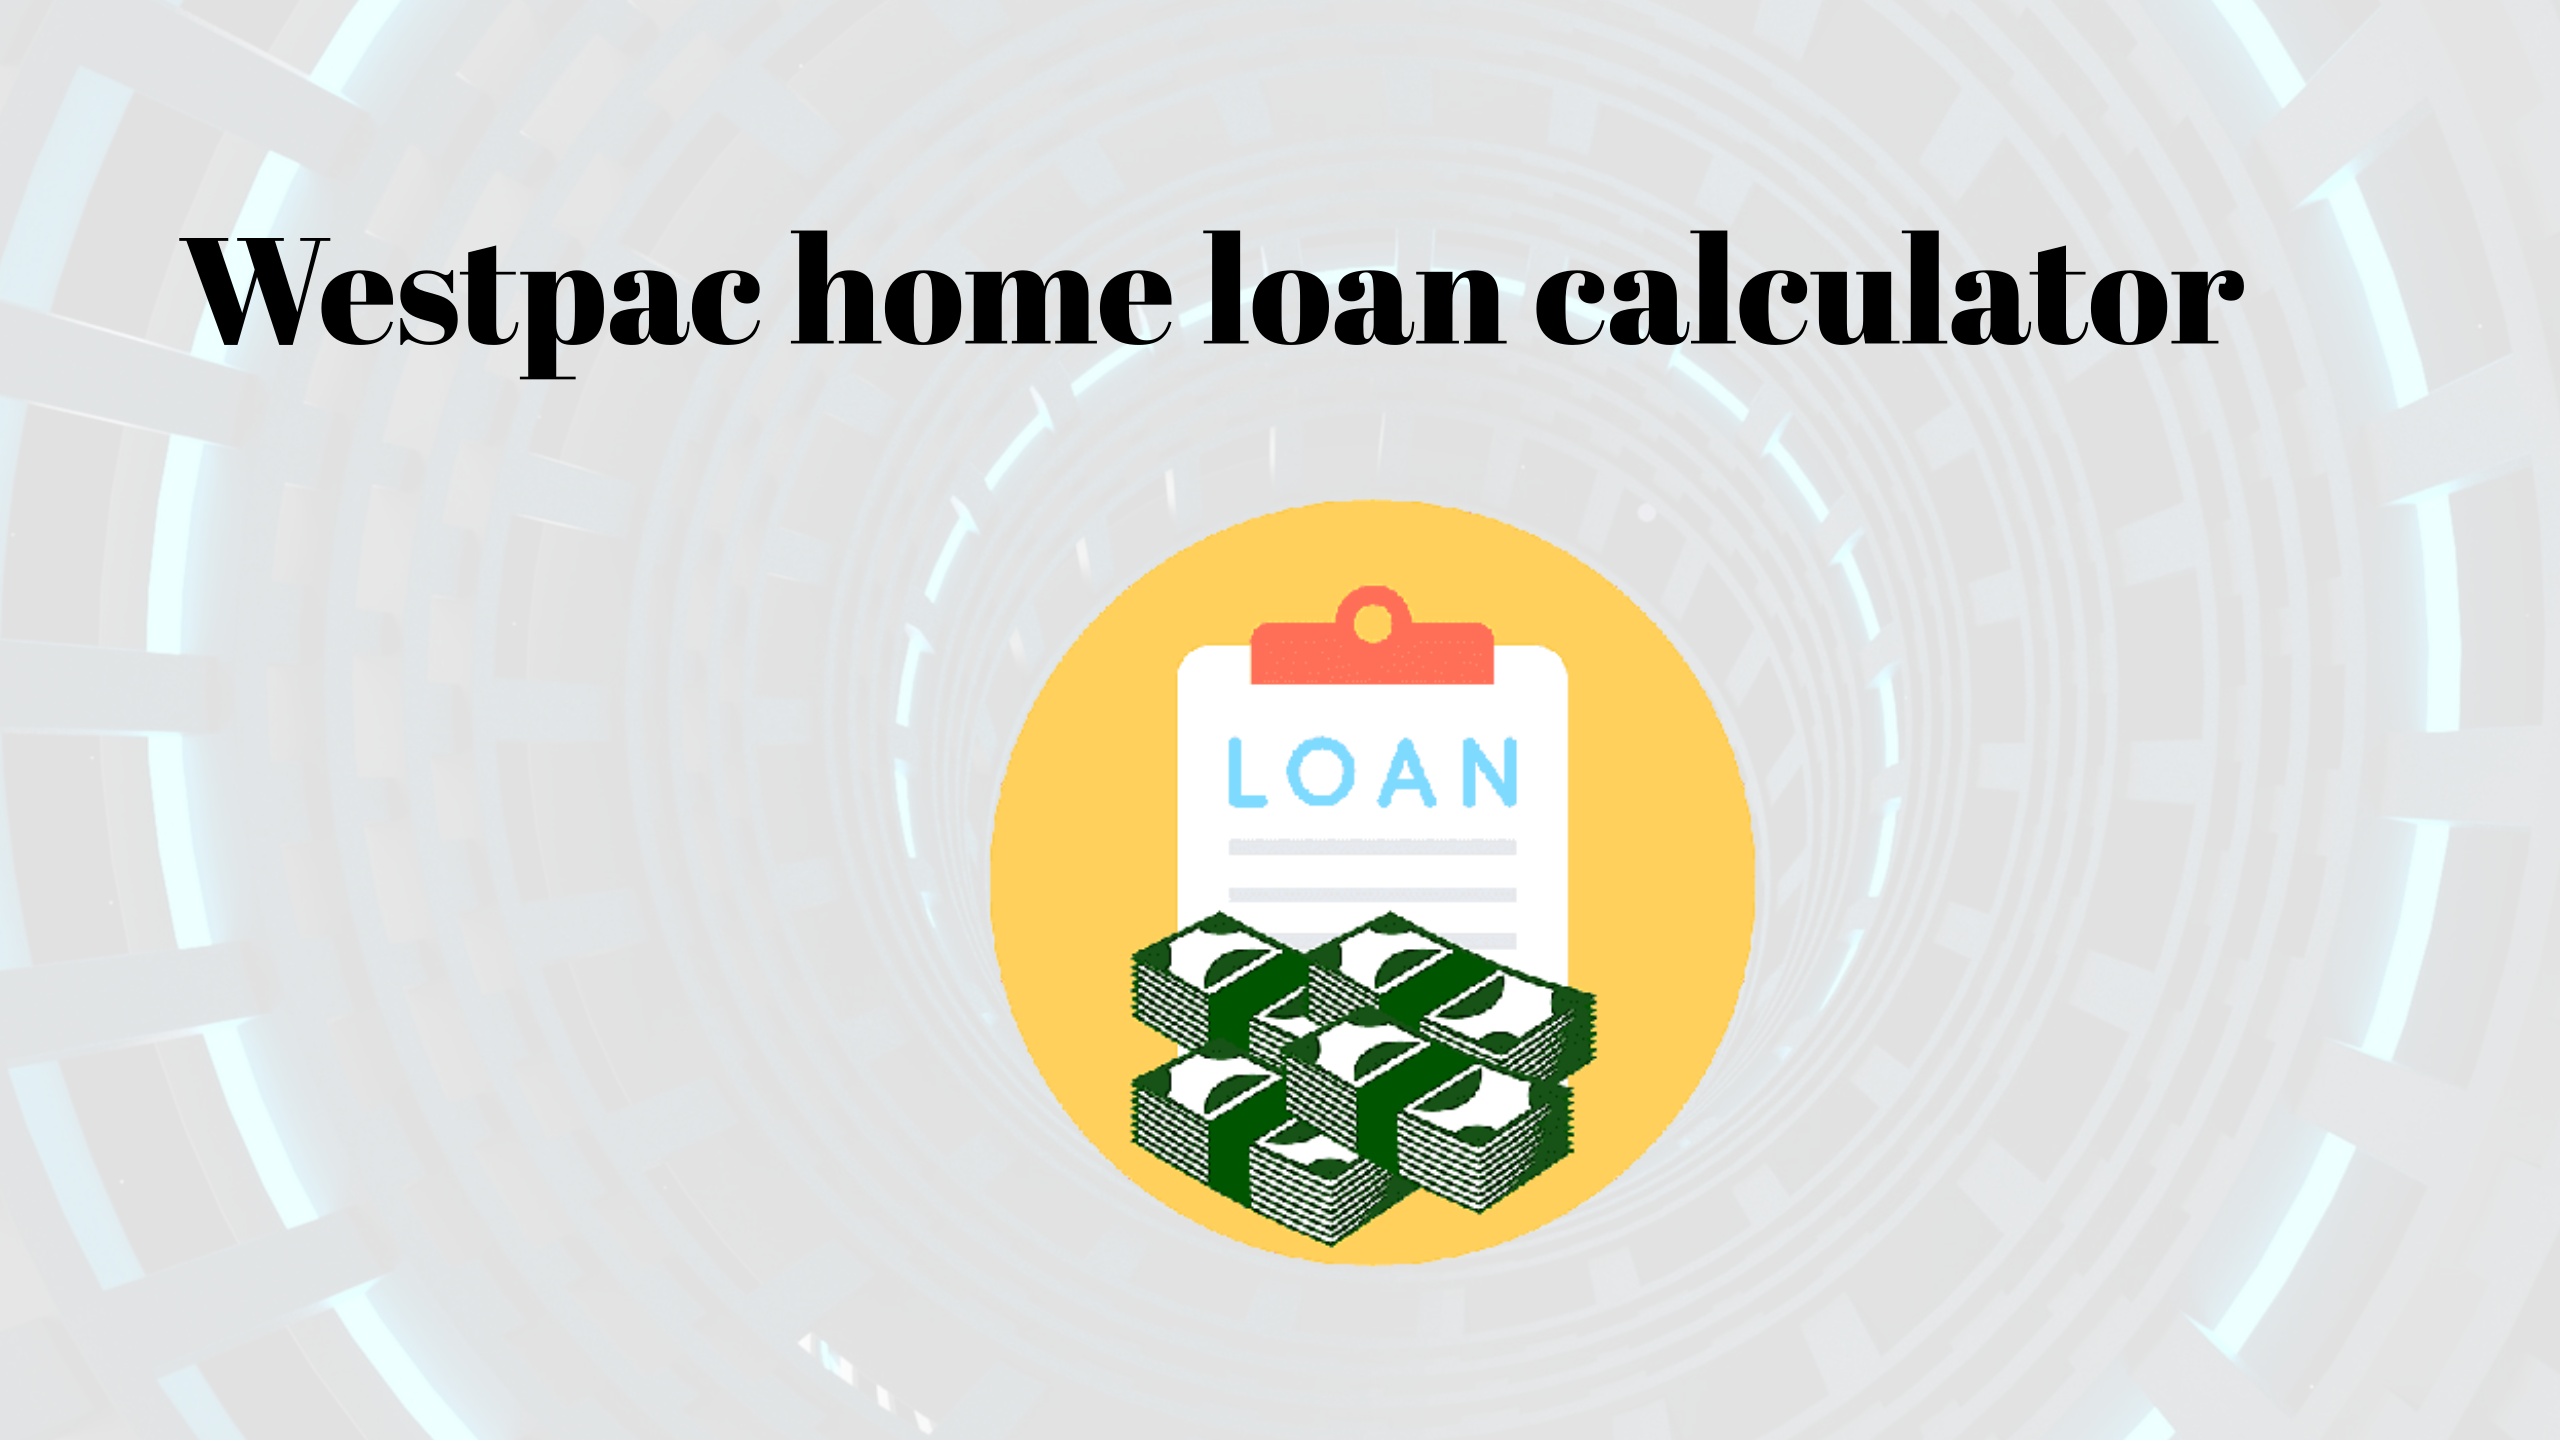 Westpac home loan calculator